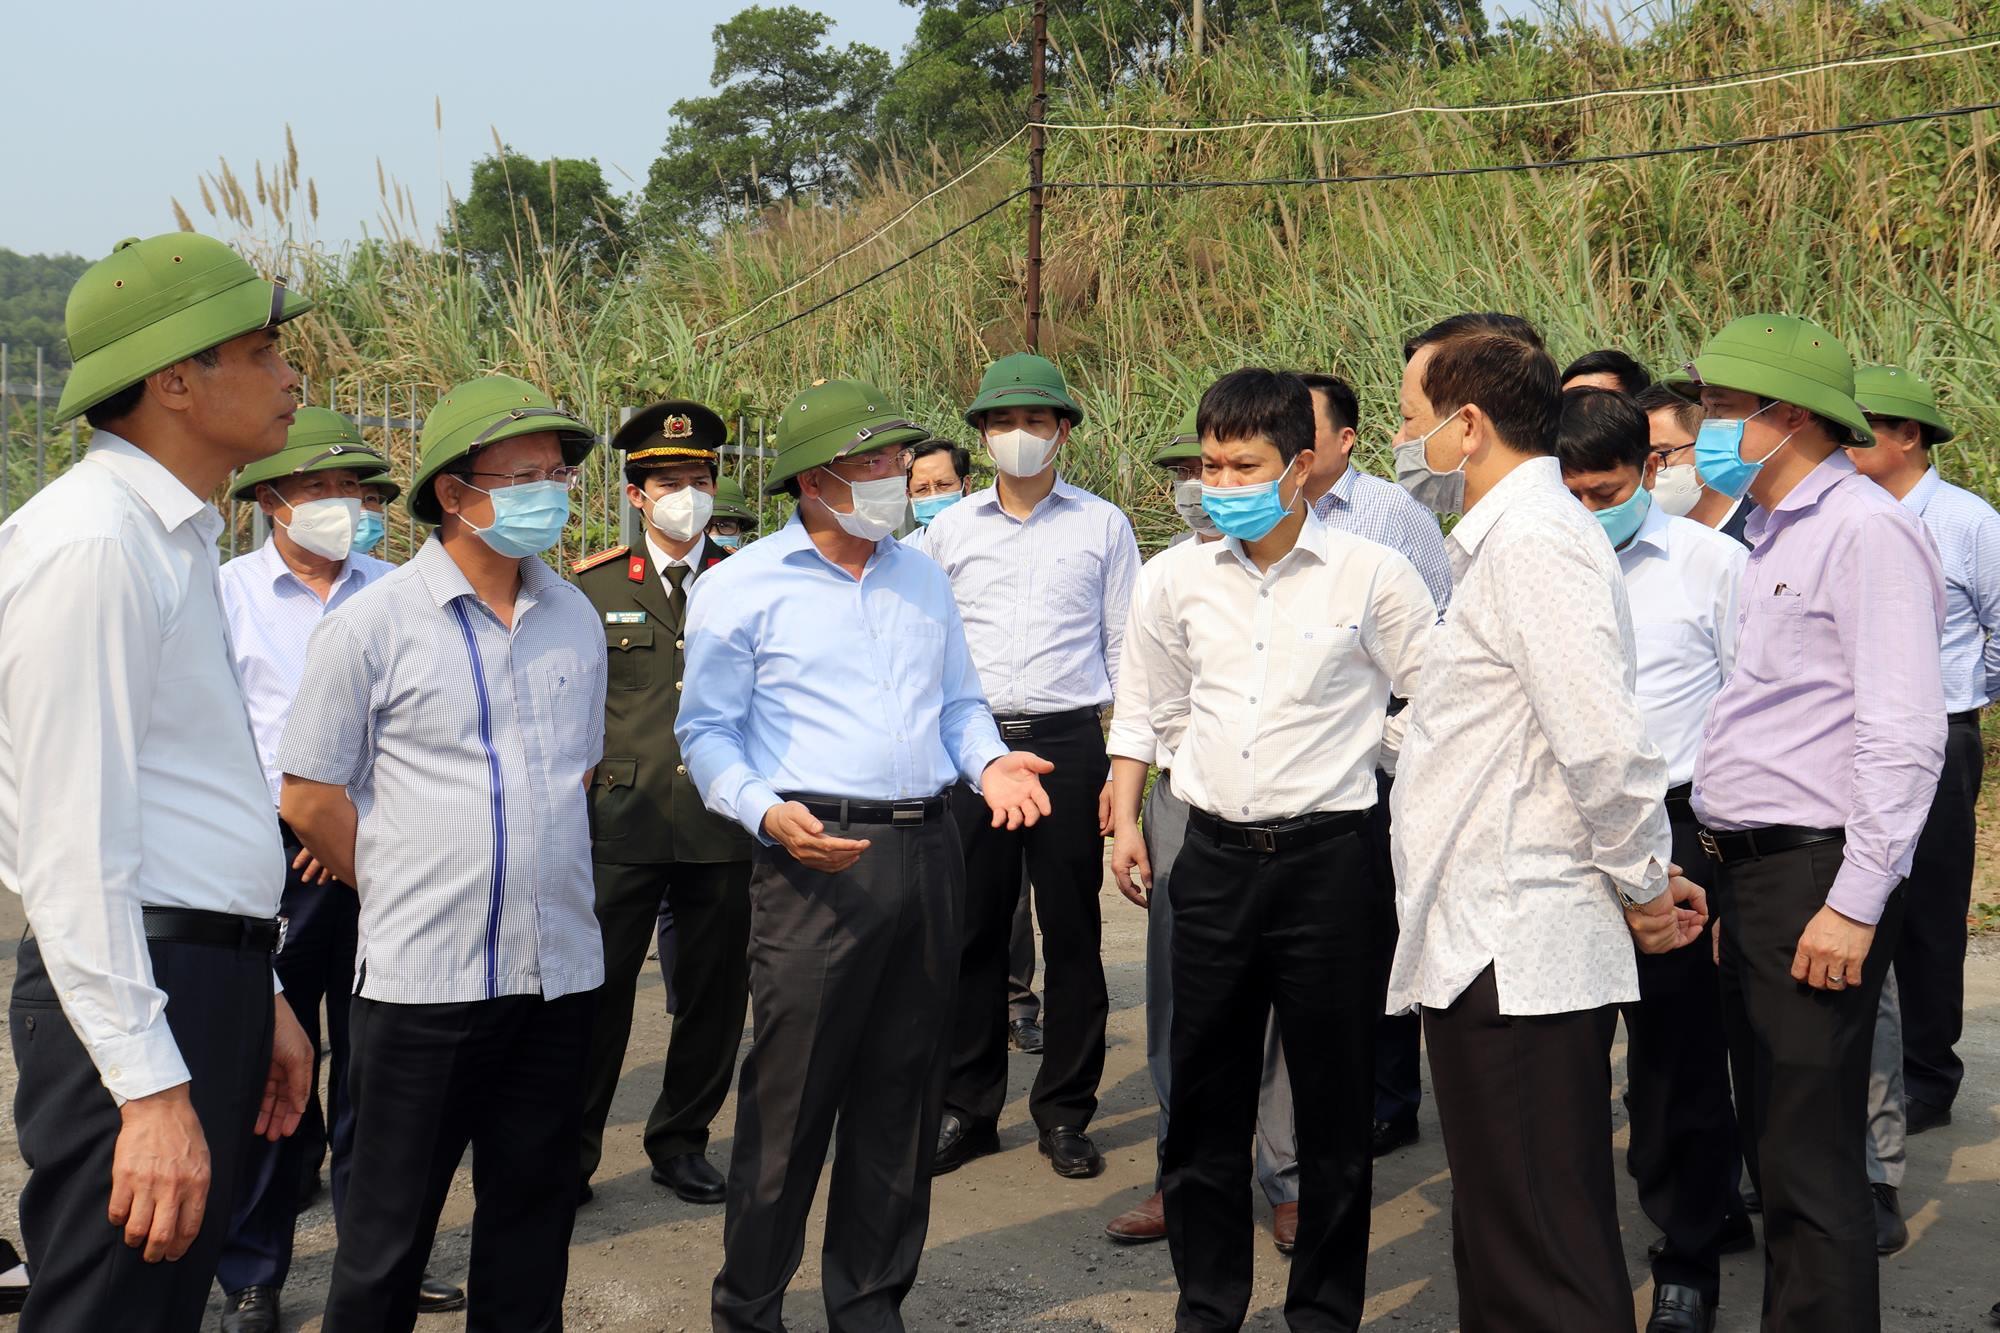 Đồng chí Nguyễn Xuân Ký, Bí thư Tỉnh ủy, Chủ tịch HĐND tỉnh kiểm tra tại khu vực bãi thải của Công ty Cổ phẩn Than Núi Béo.